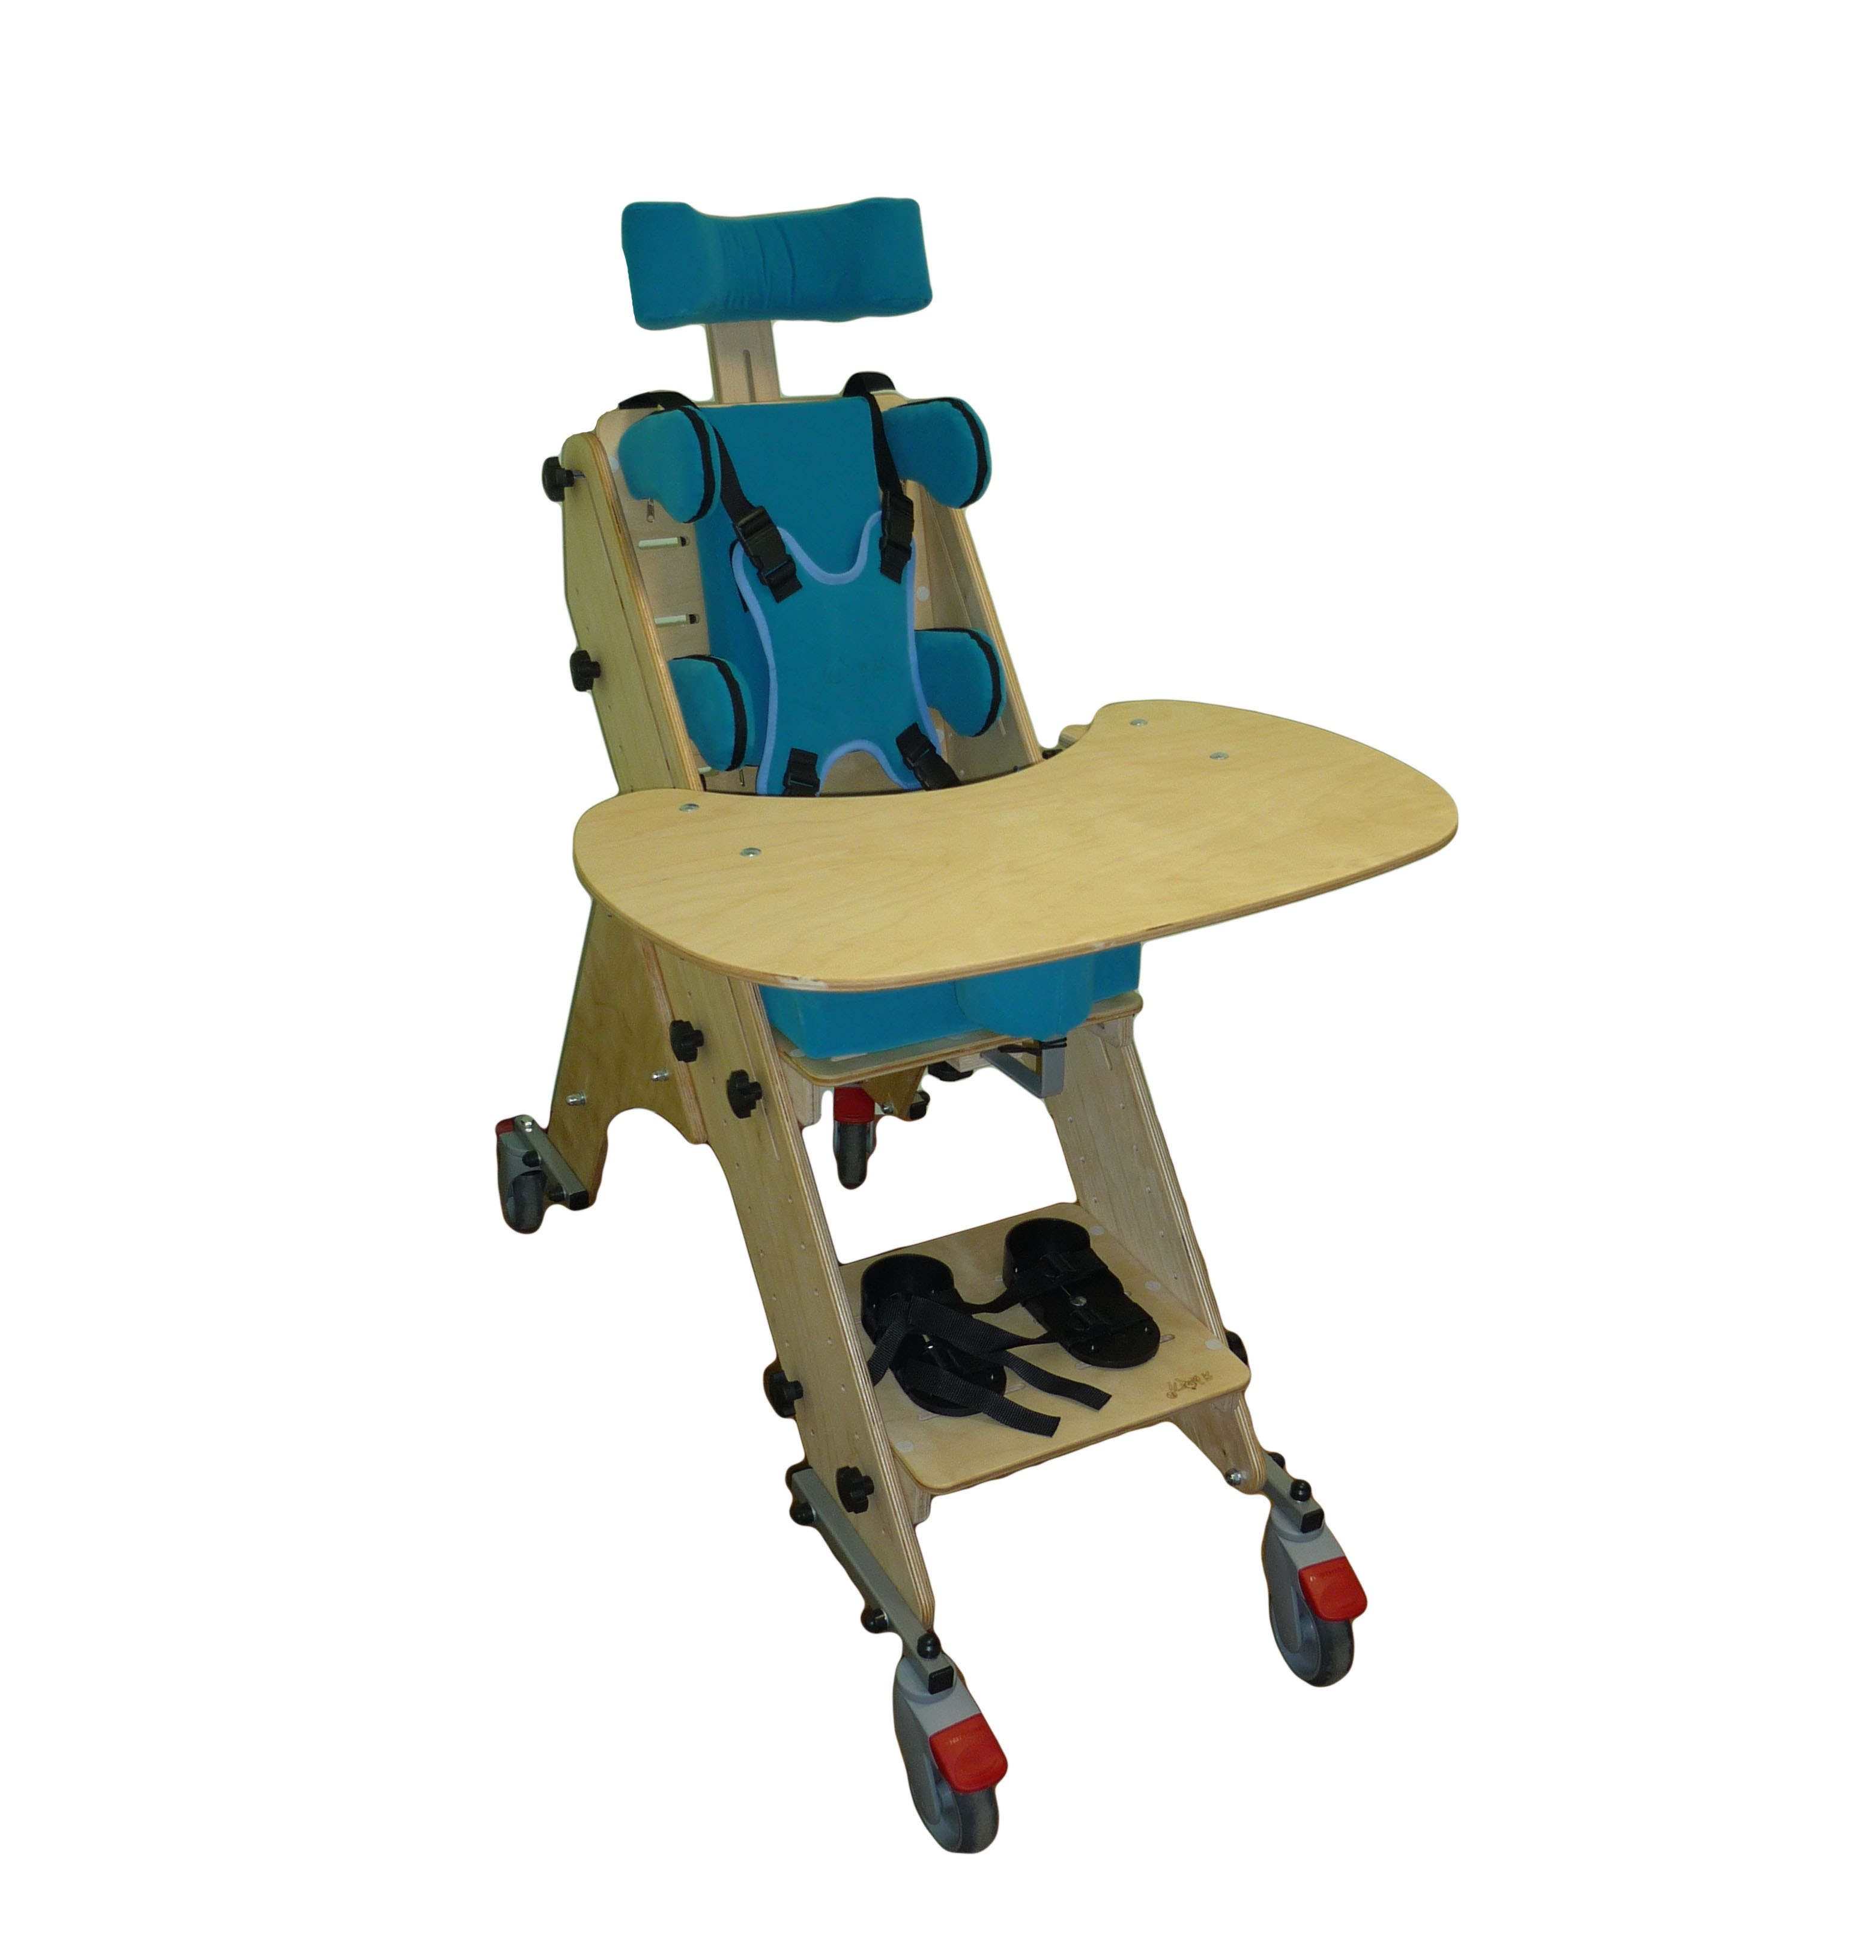 Опора функциональная для сидения для детей-инвалидов